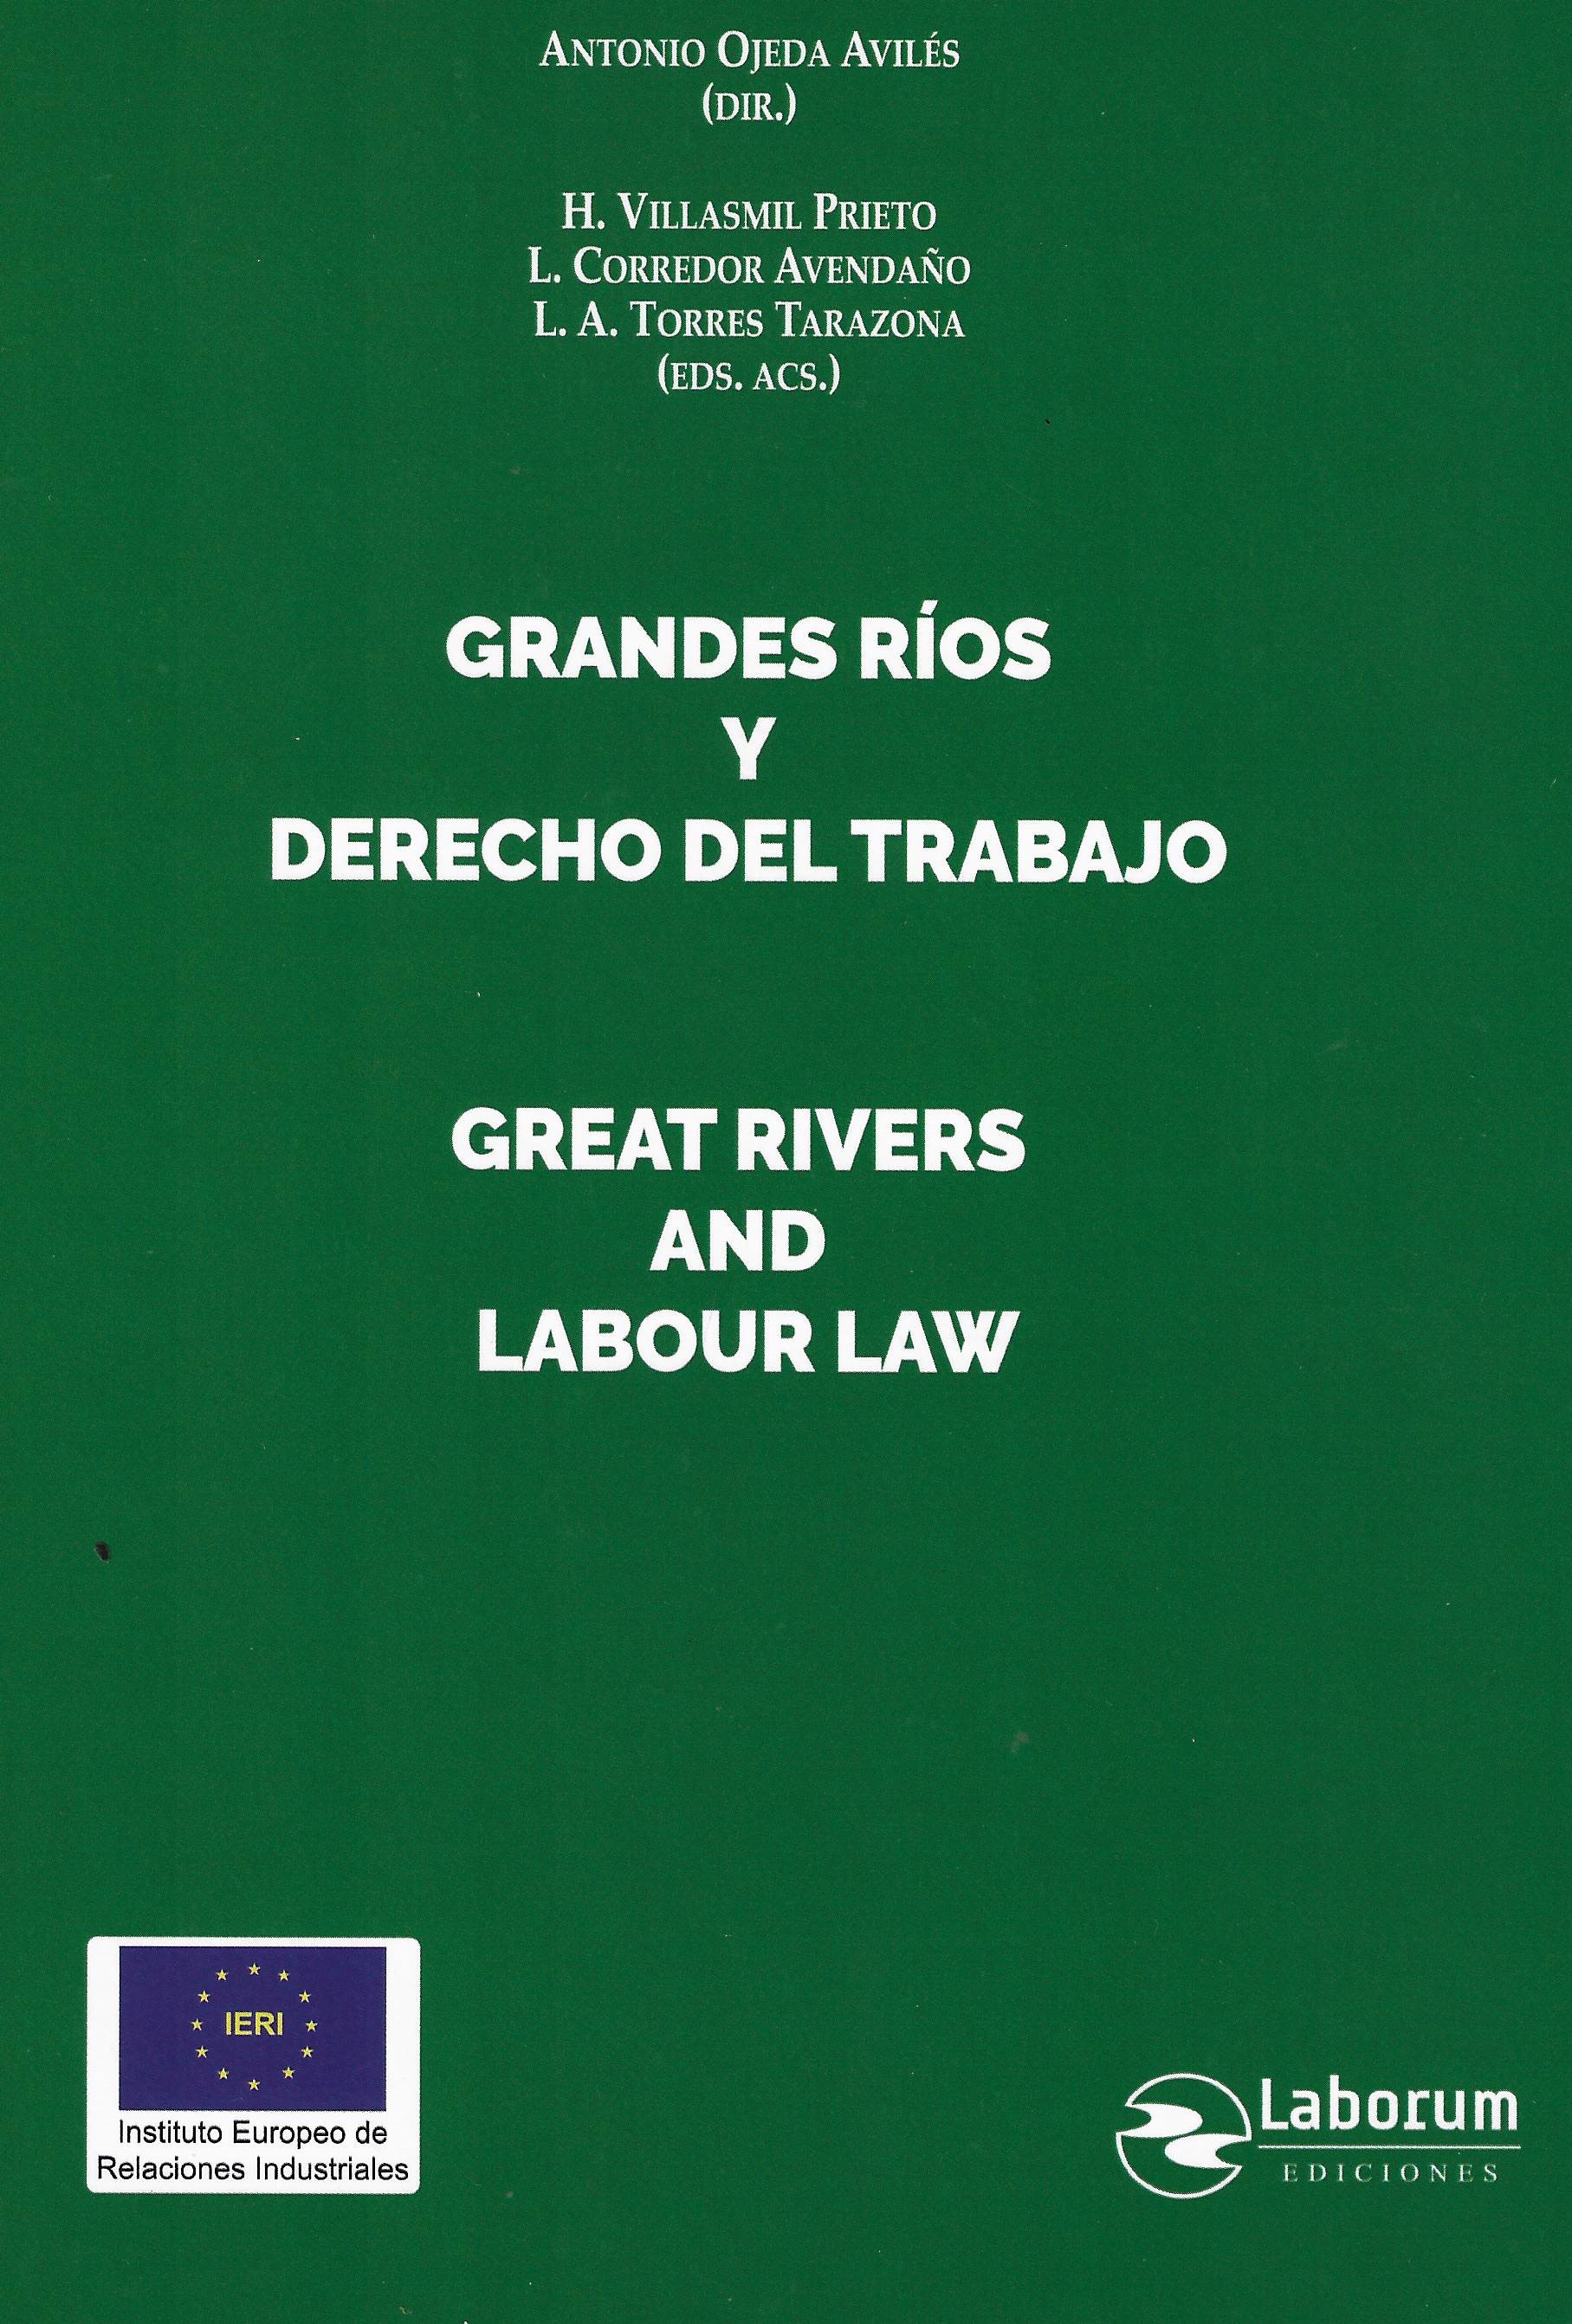 Imagen de portada del libro Grandes ríos y derecho del trabajo